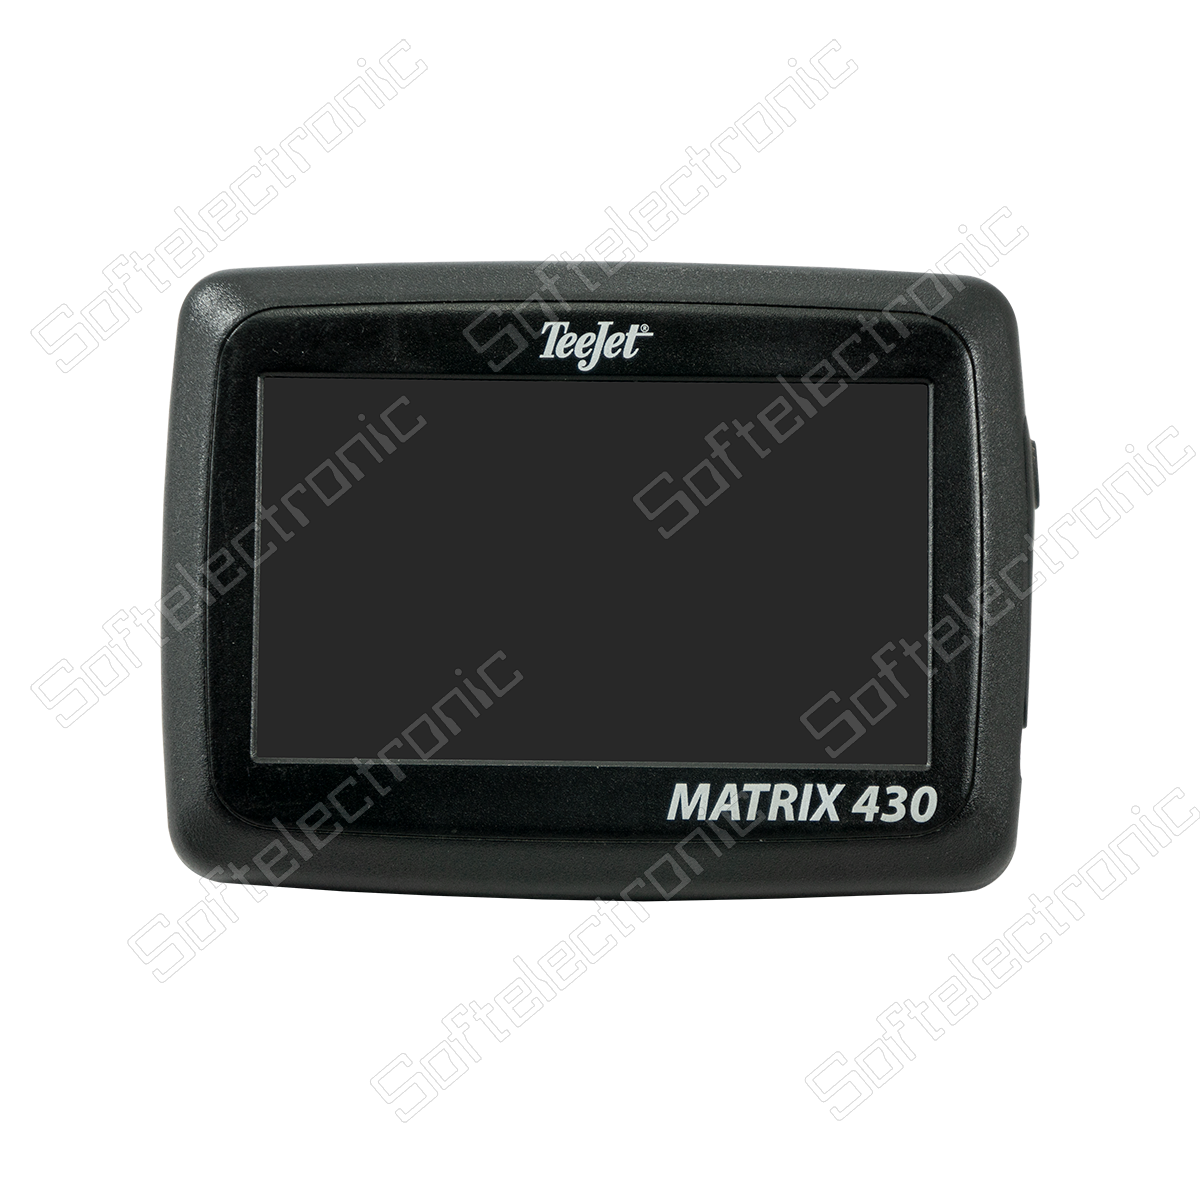 Reparatur des Matrix 430 GPS-Systems